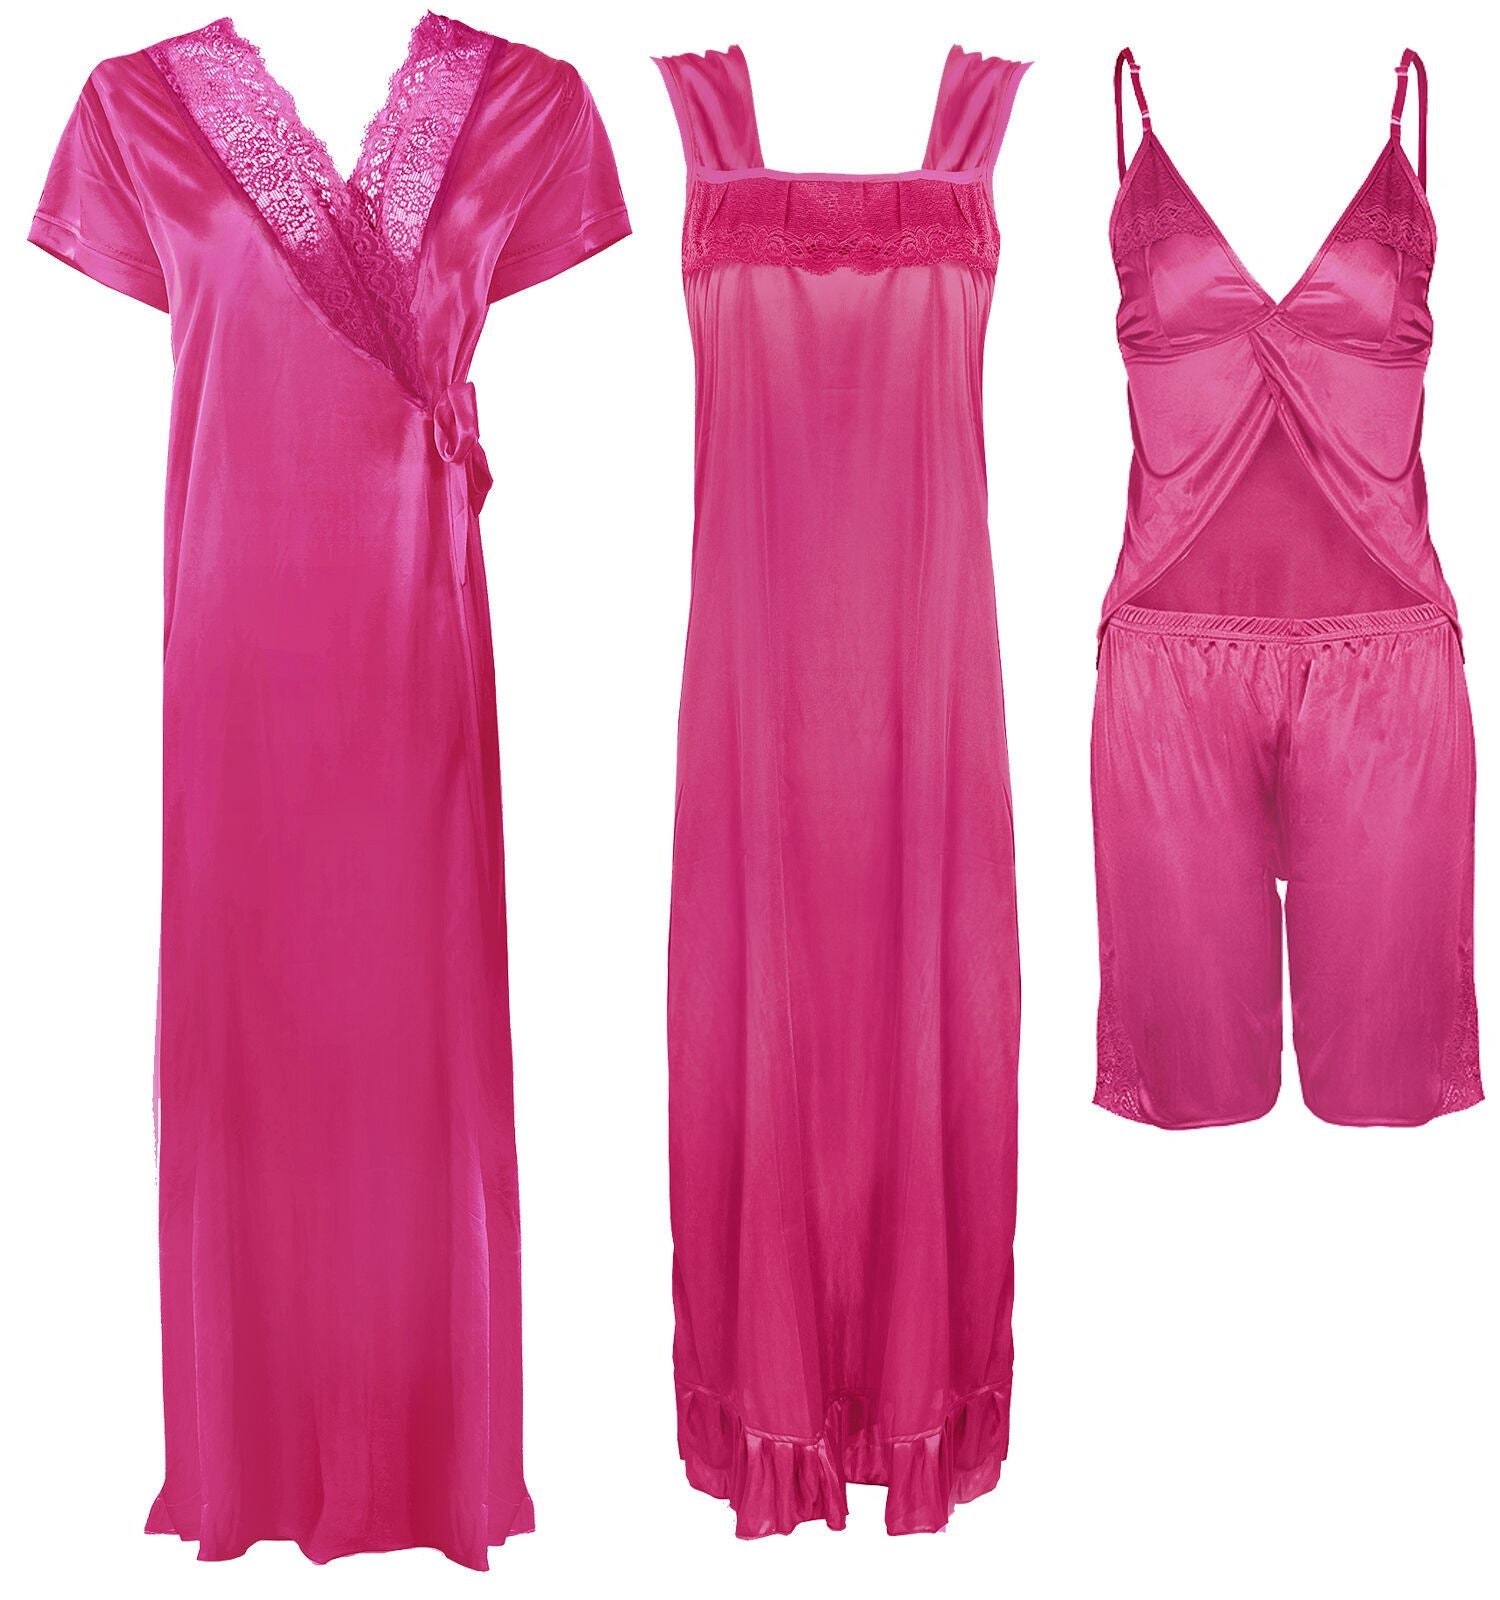 Hot Pink / One Size Ladies Satin Nightwear Set / Pyjama Set The Orange Tags